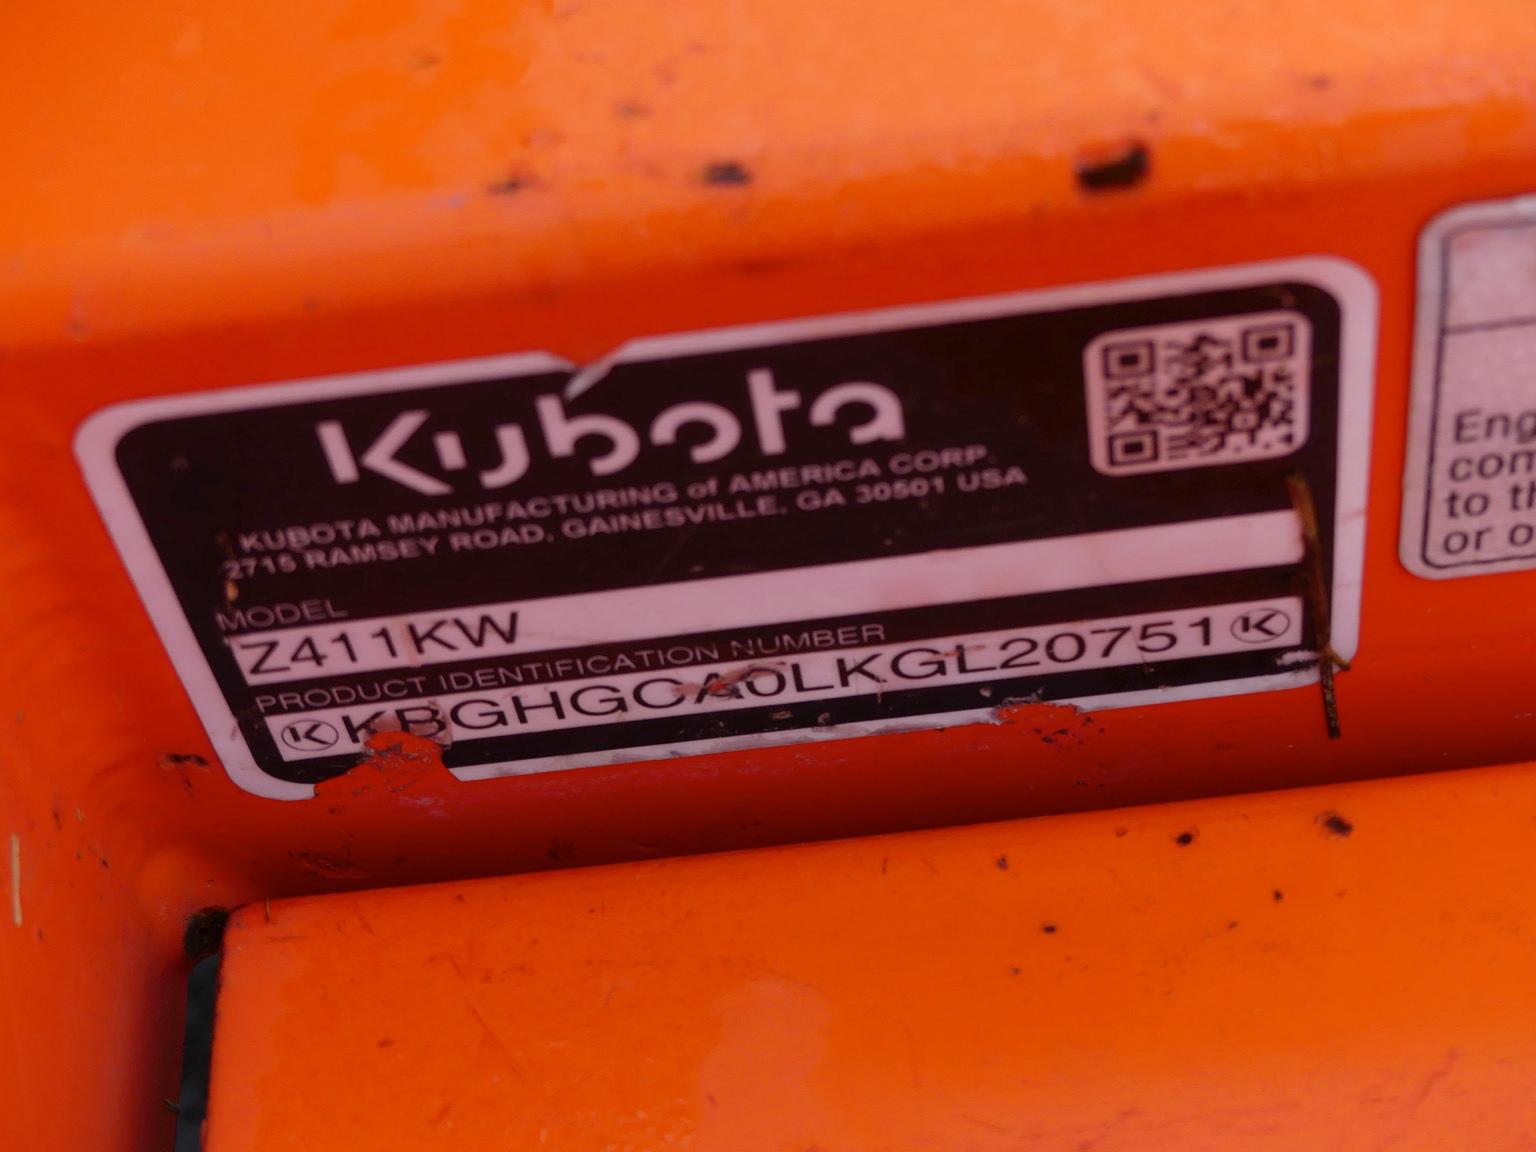 Kubota Z411KW Zero-turn Mower, s/n KB1GHGCAOLKGL20751: 48in.